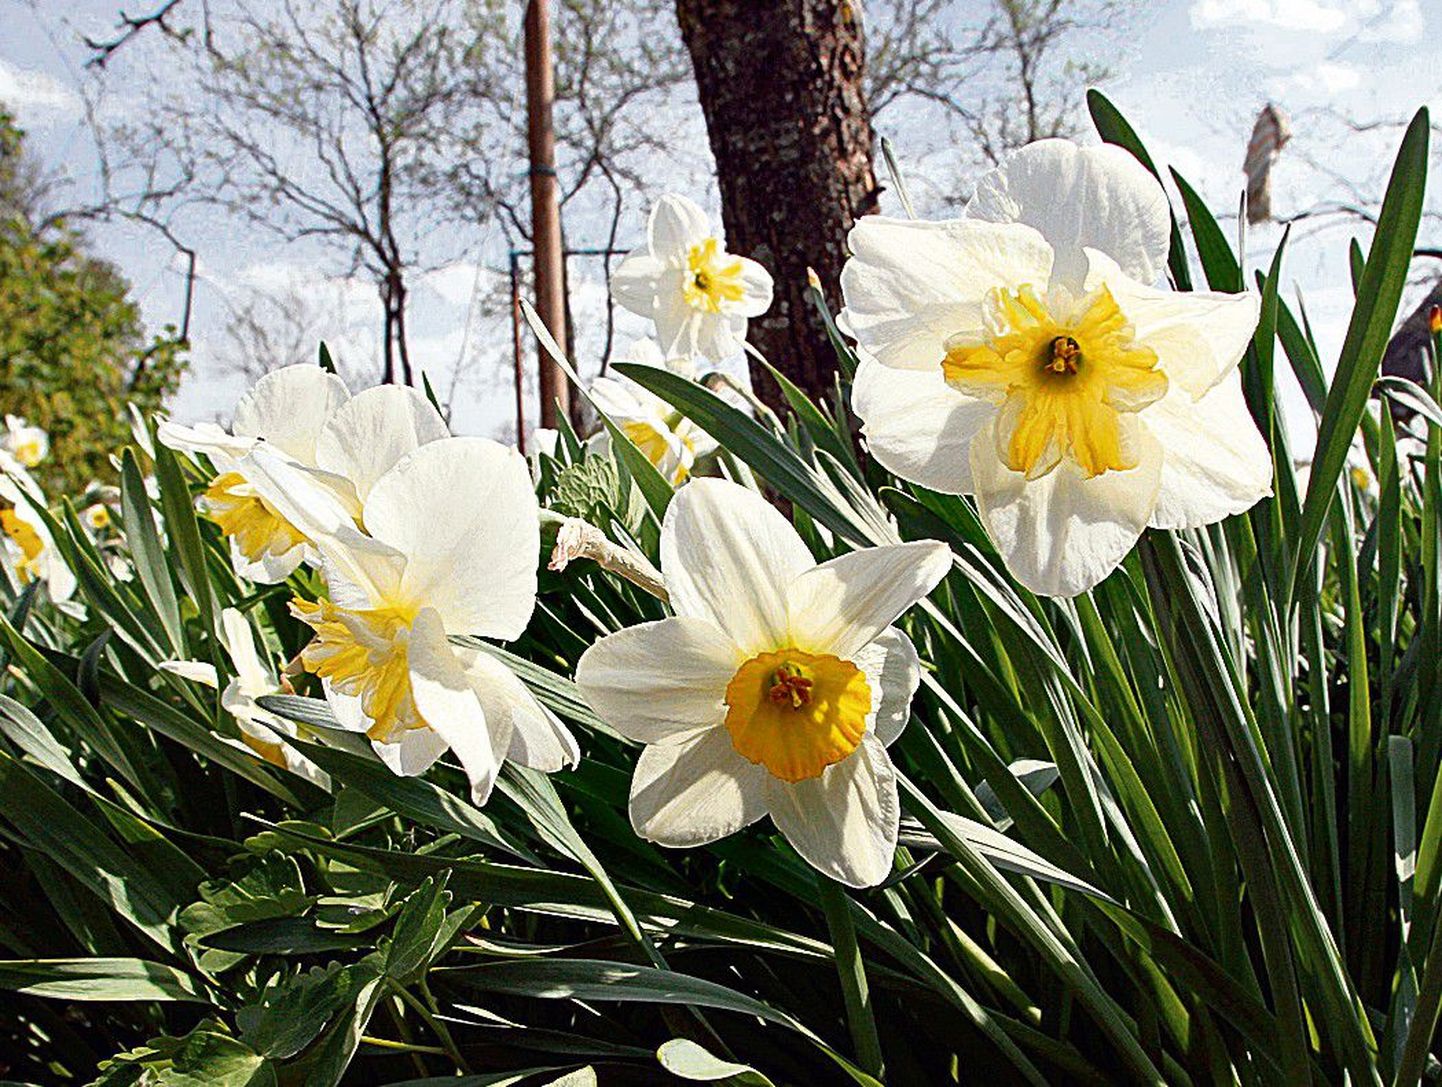 Nartsiss (Narcissus)
Nartsissid on looduslikult levinud Vahemere maades,  Kesk-Euroopas ja Ees-Aasias. Tänapäevaks on nendest iluaianduse tarbeks aretatud üle 10 000 sordi. Eestisse jõudsid nartsissid 18. sajandi alguses, olles tänapäeval koos tulpidega armastatumad kevadised aialilled.